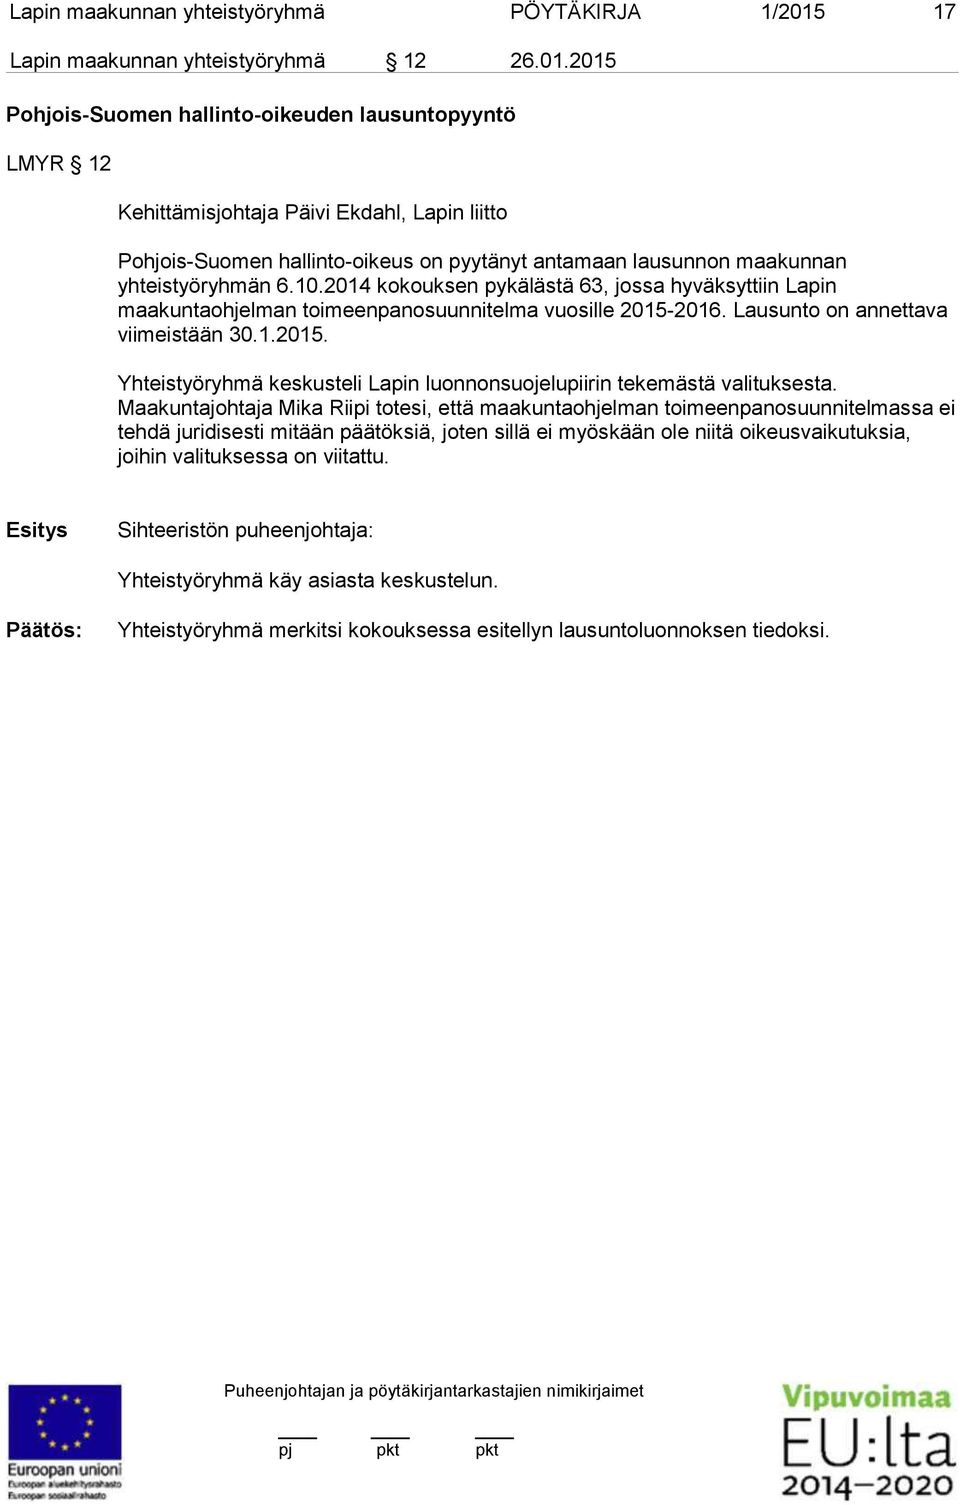 2015 Pohjois-Suomen hallinto-oikeuden lausuntopyyntö LMYR 12 Kehittämisjohtaja Päivi Ekdahl, Lapin liitto Pohjois-Suomen hallinto-oikeus on pyytänyt antamaan lausunnon maakunnan yhteistyöryhmän 6.10.